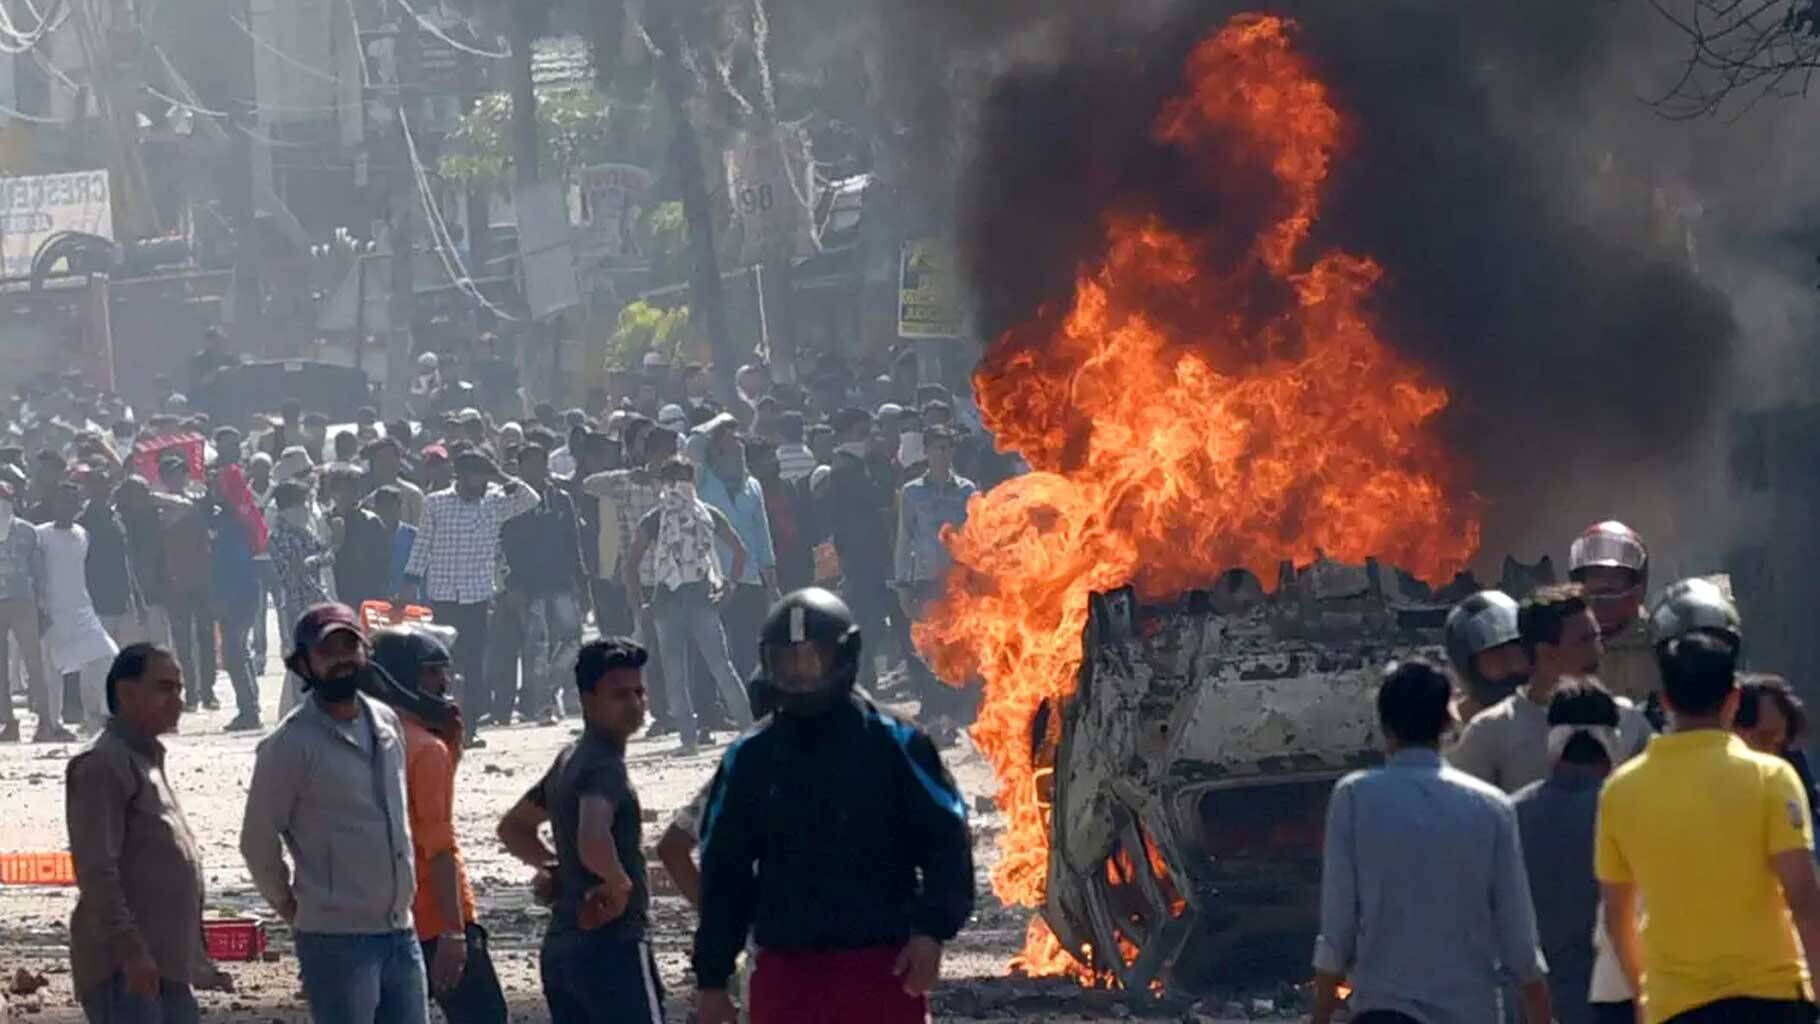 Delhi Riots 2020 : दंगों के मामलों में त्वरित सुनवाई सुनिश्चित करने के लिए पुलिस अधिकारियों को बनाएं संवेदनशील, कड़कड़डूमा कोर्ट का दिल्ली पुलिस को निर्देश